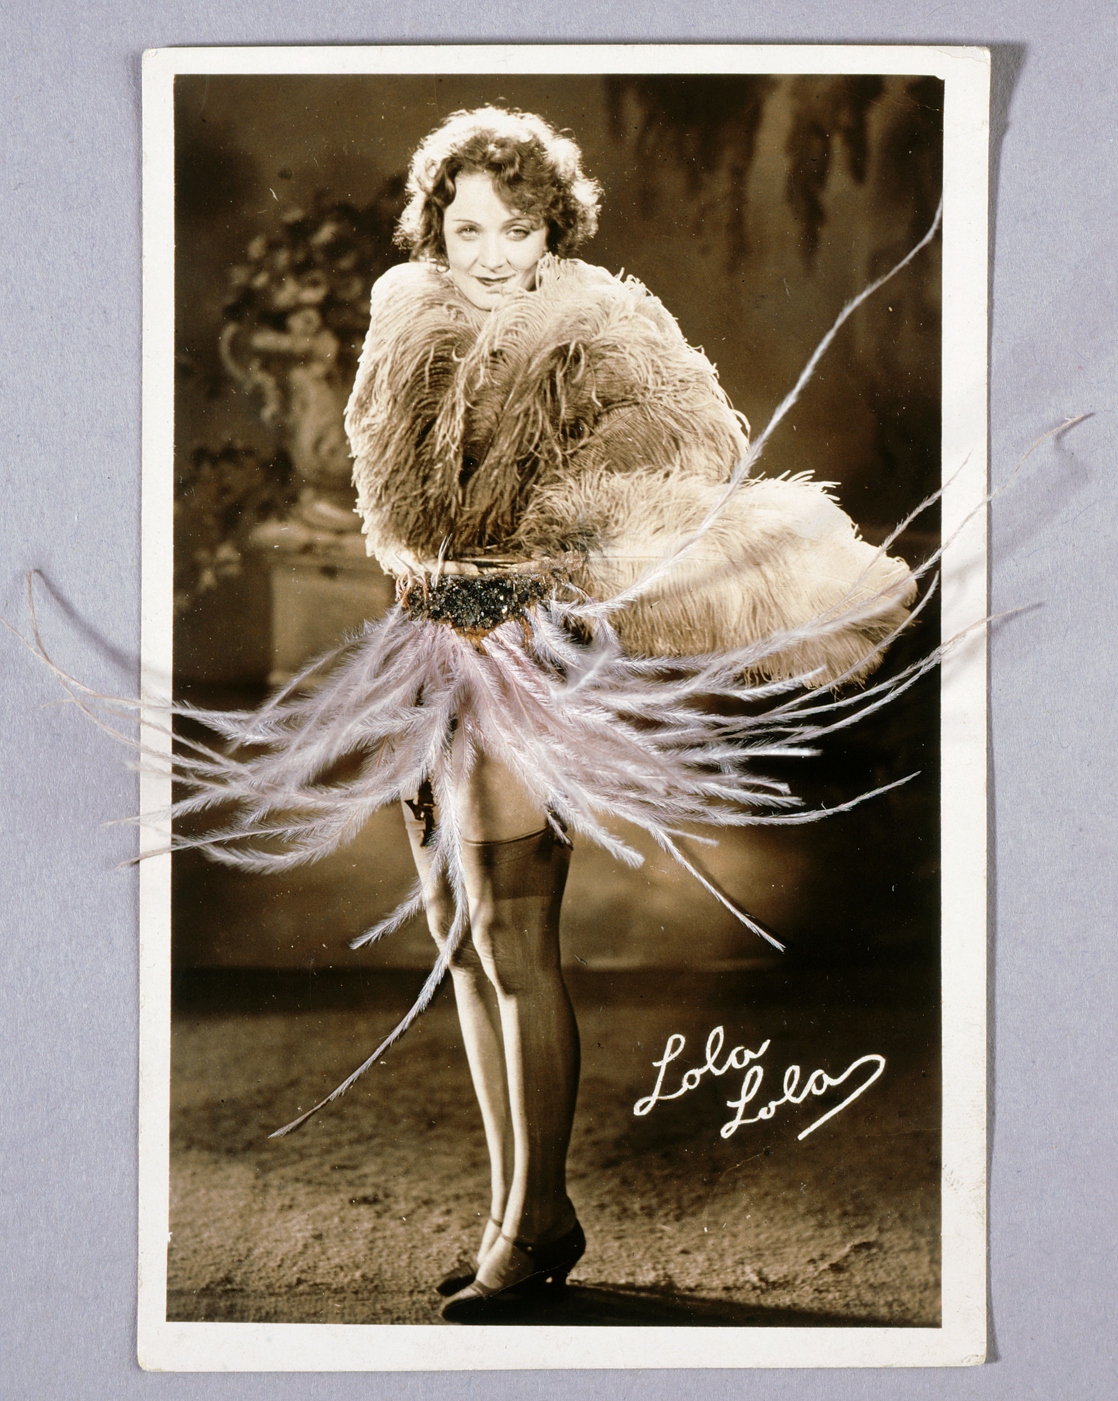 Pustekarte mit Marlene Dietrich